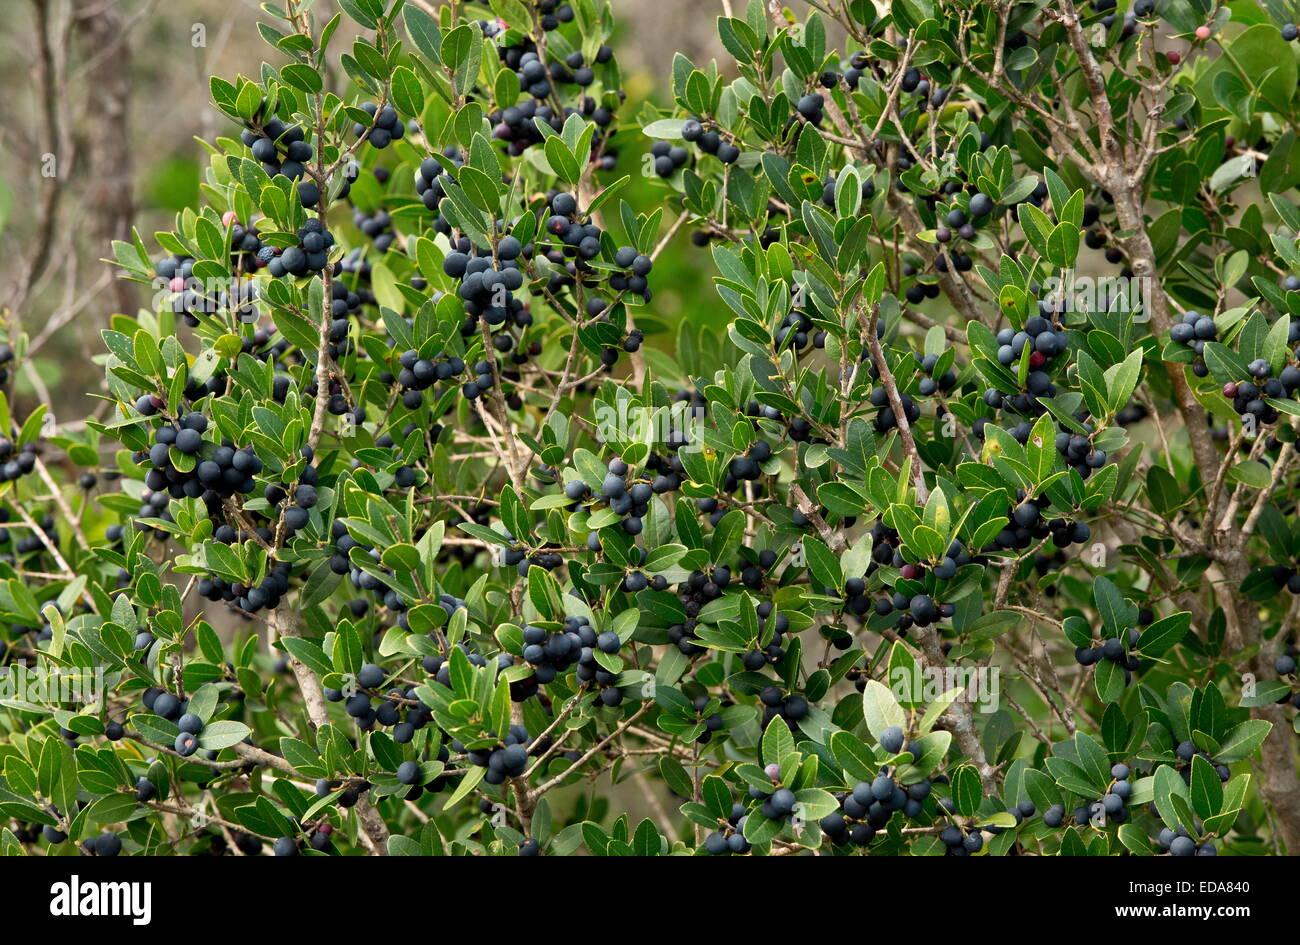 Mediterraneo frangola, Rhamnus alaternus in frutti in autunno, a sud-ovest della Francia Foto Stock